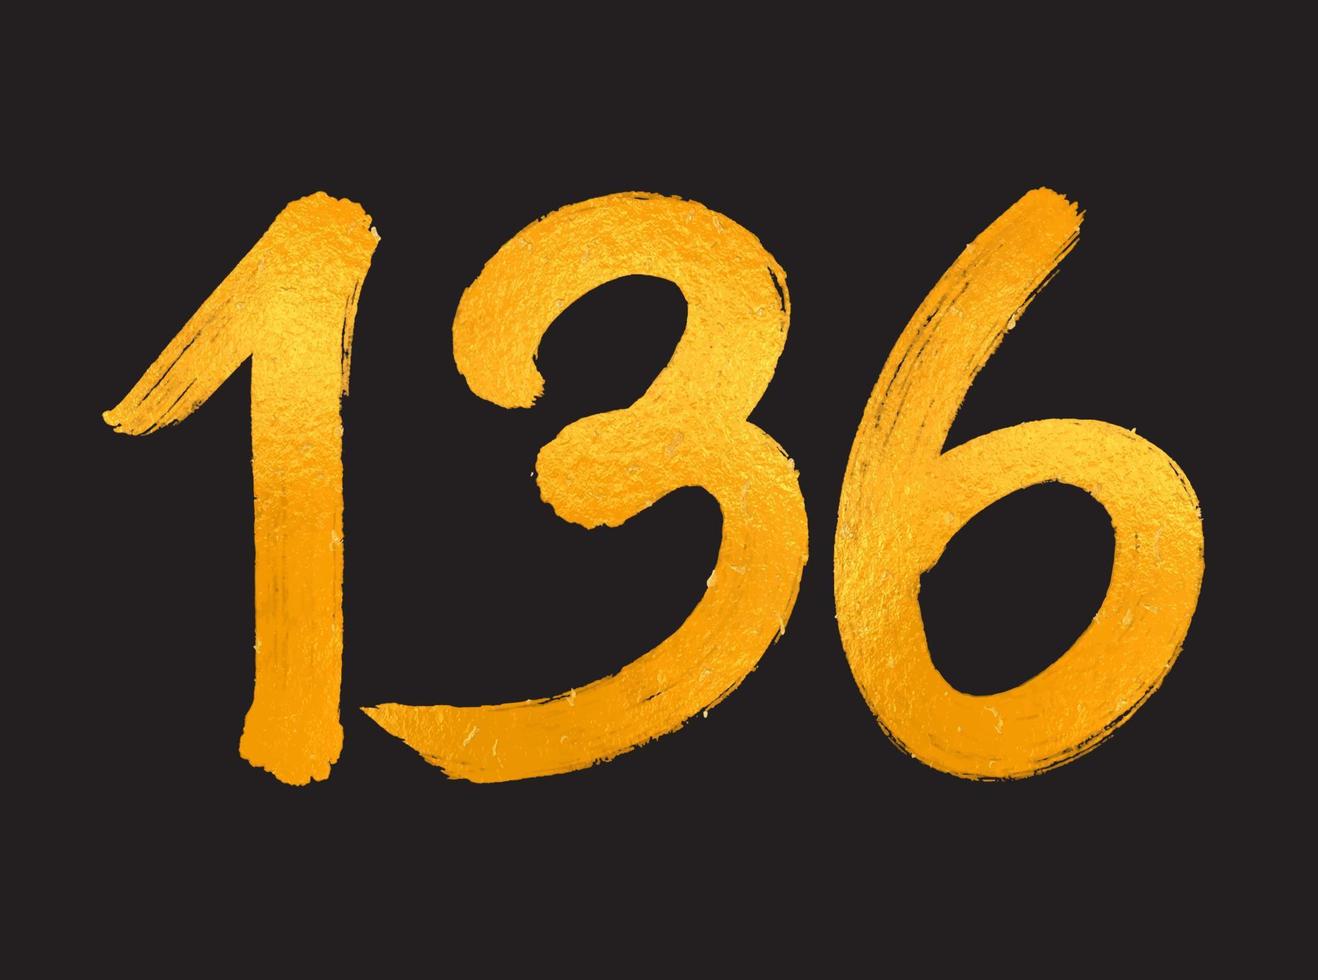 136-Nummer-Logo-Vektorillustration, 136-jährige Jubiläumsfeier-Vektorvorlage, 136. Geburtstag, goldene Buchstaben-Nummern-Pinsel-Zeichnung, handgezeichnete Skizze, Nummer-Logo-Design für Druck, T-Shirt vektor